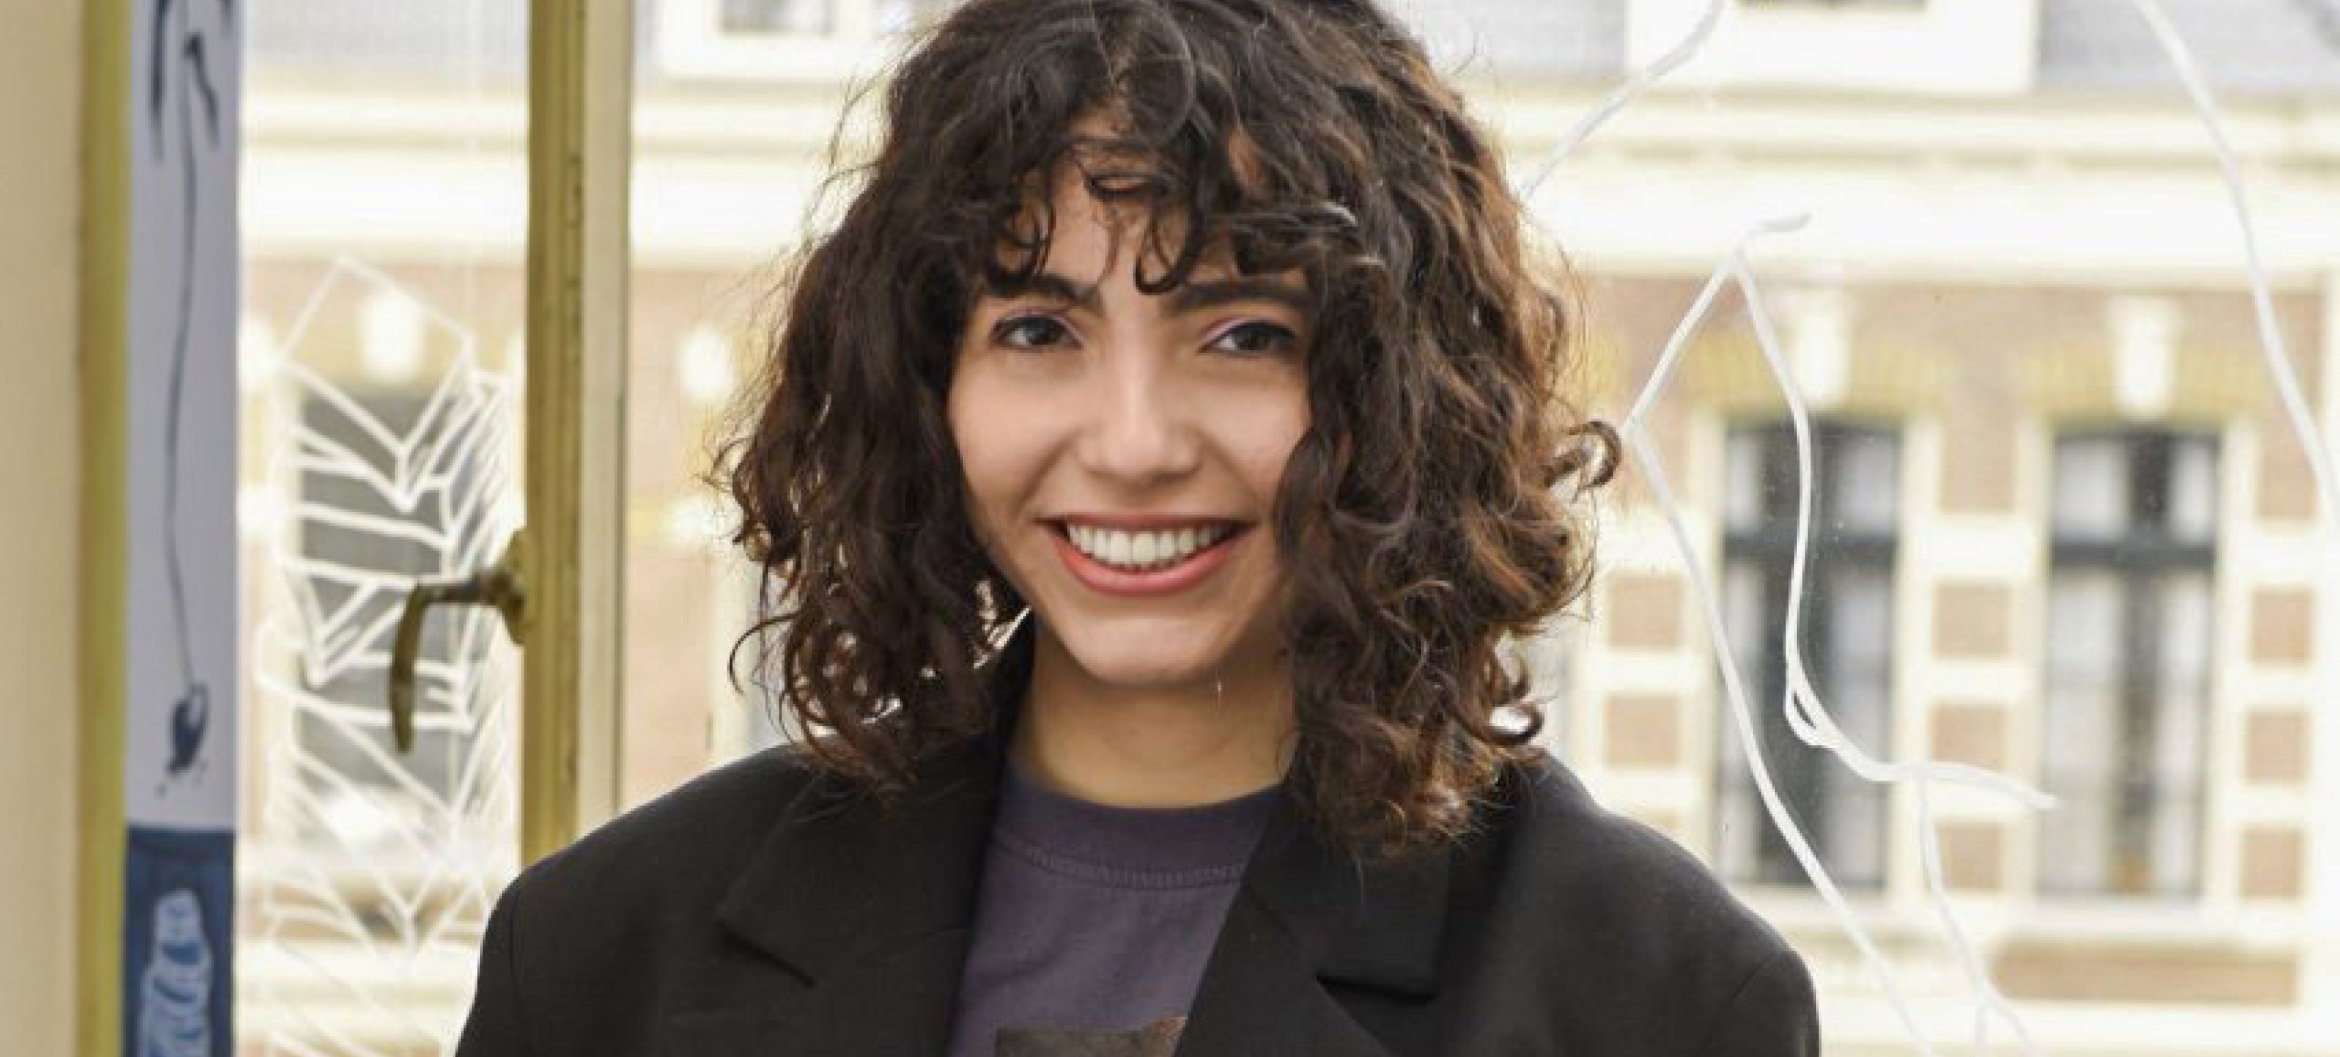 Irem Biter, masterstudent Interieurarchitectuur. Lees het verhaal over haar bijzondere afstudeeronderzoek naar de beleving van Turke queer migranten in de #finalsfriday van deze week.